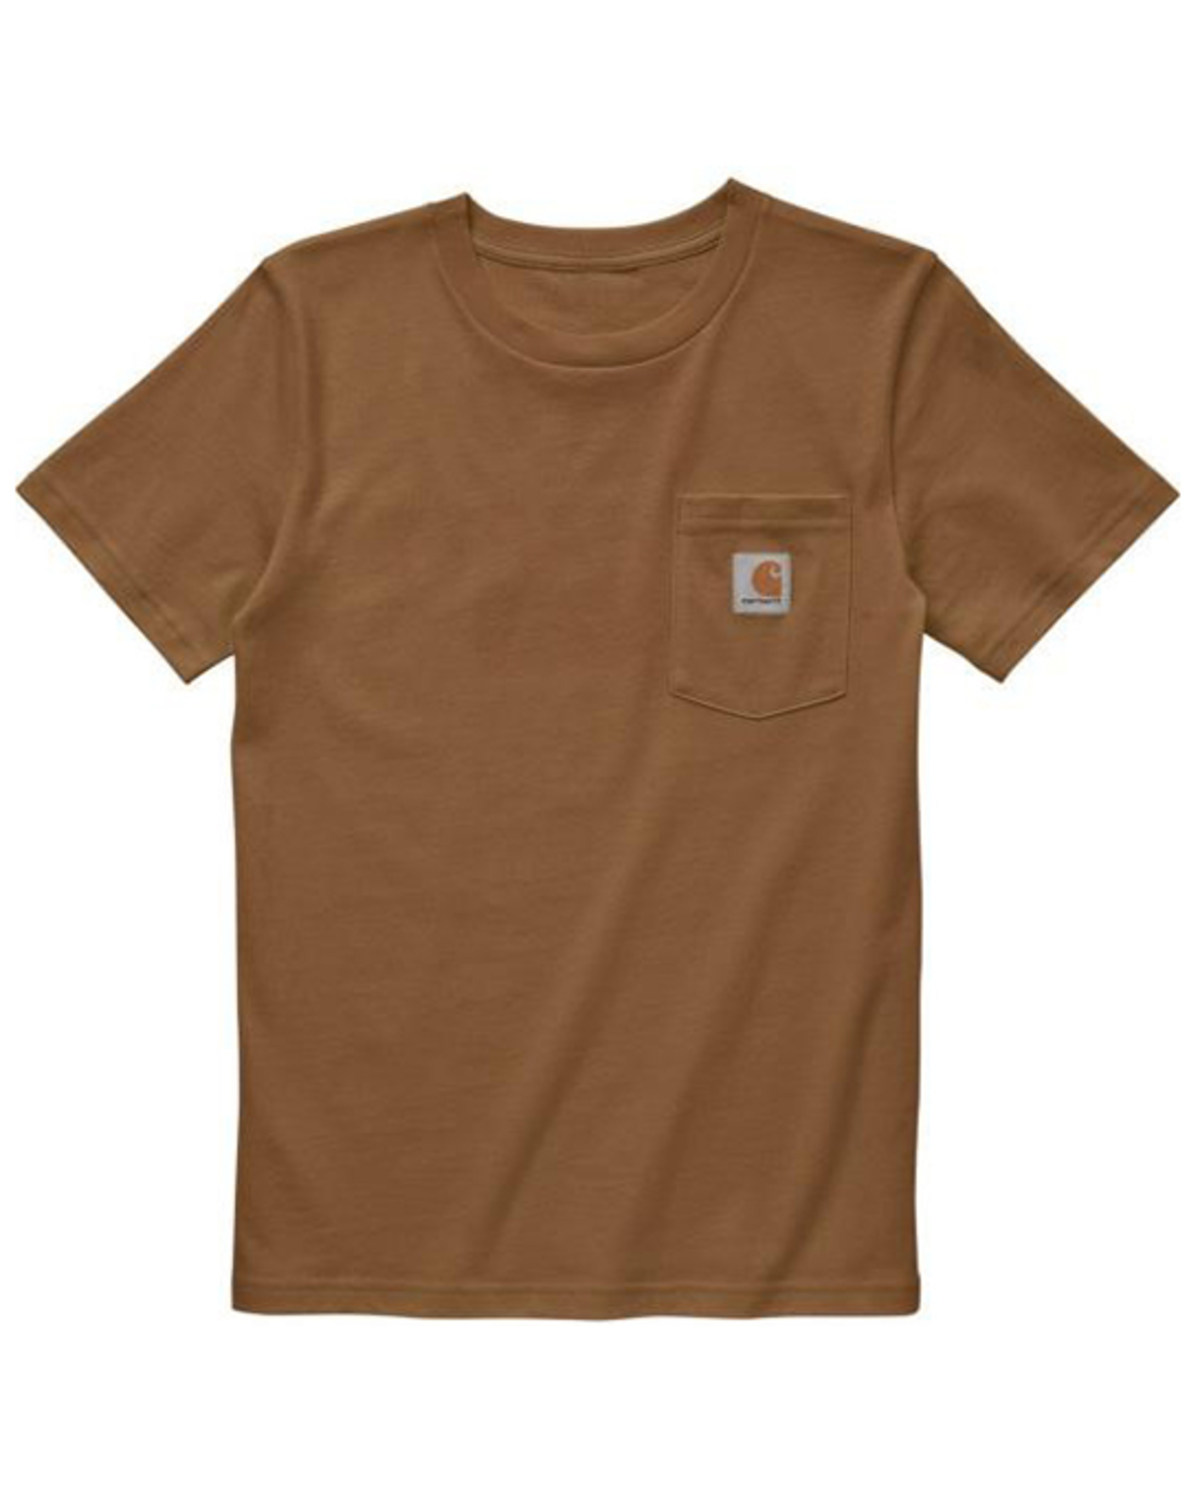 Carhartt Boys' Short Sleeve Pocket T-Shirt